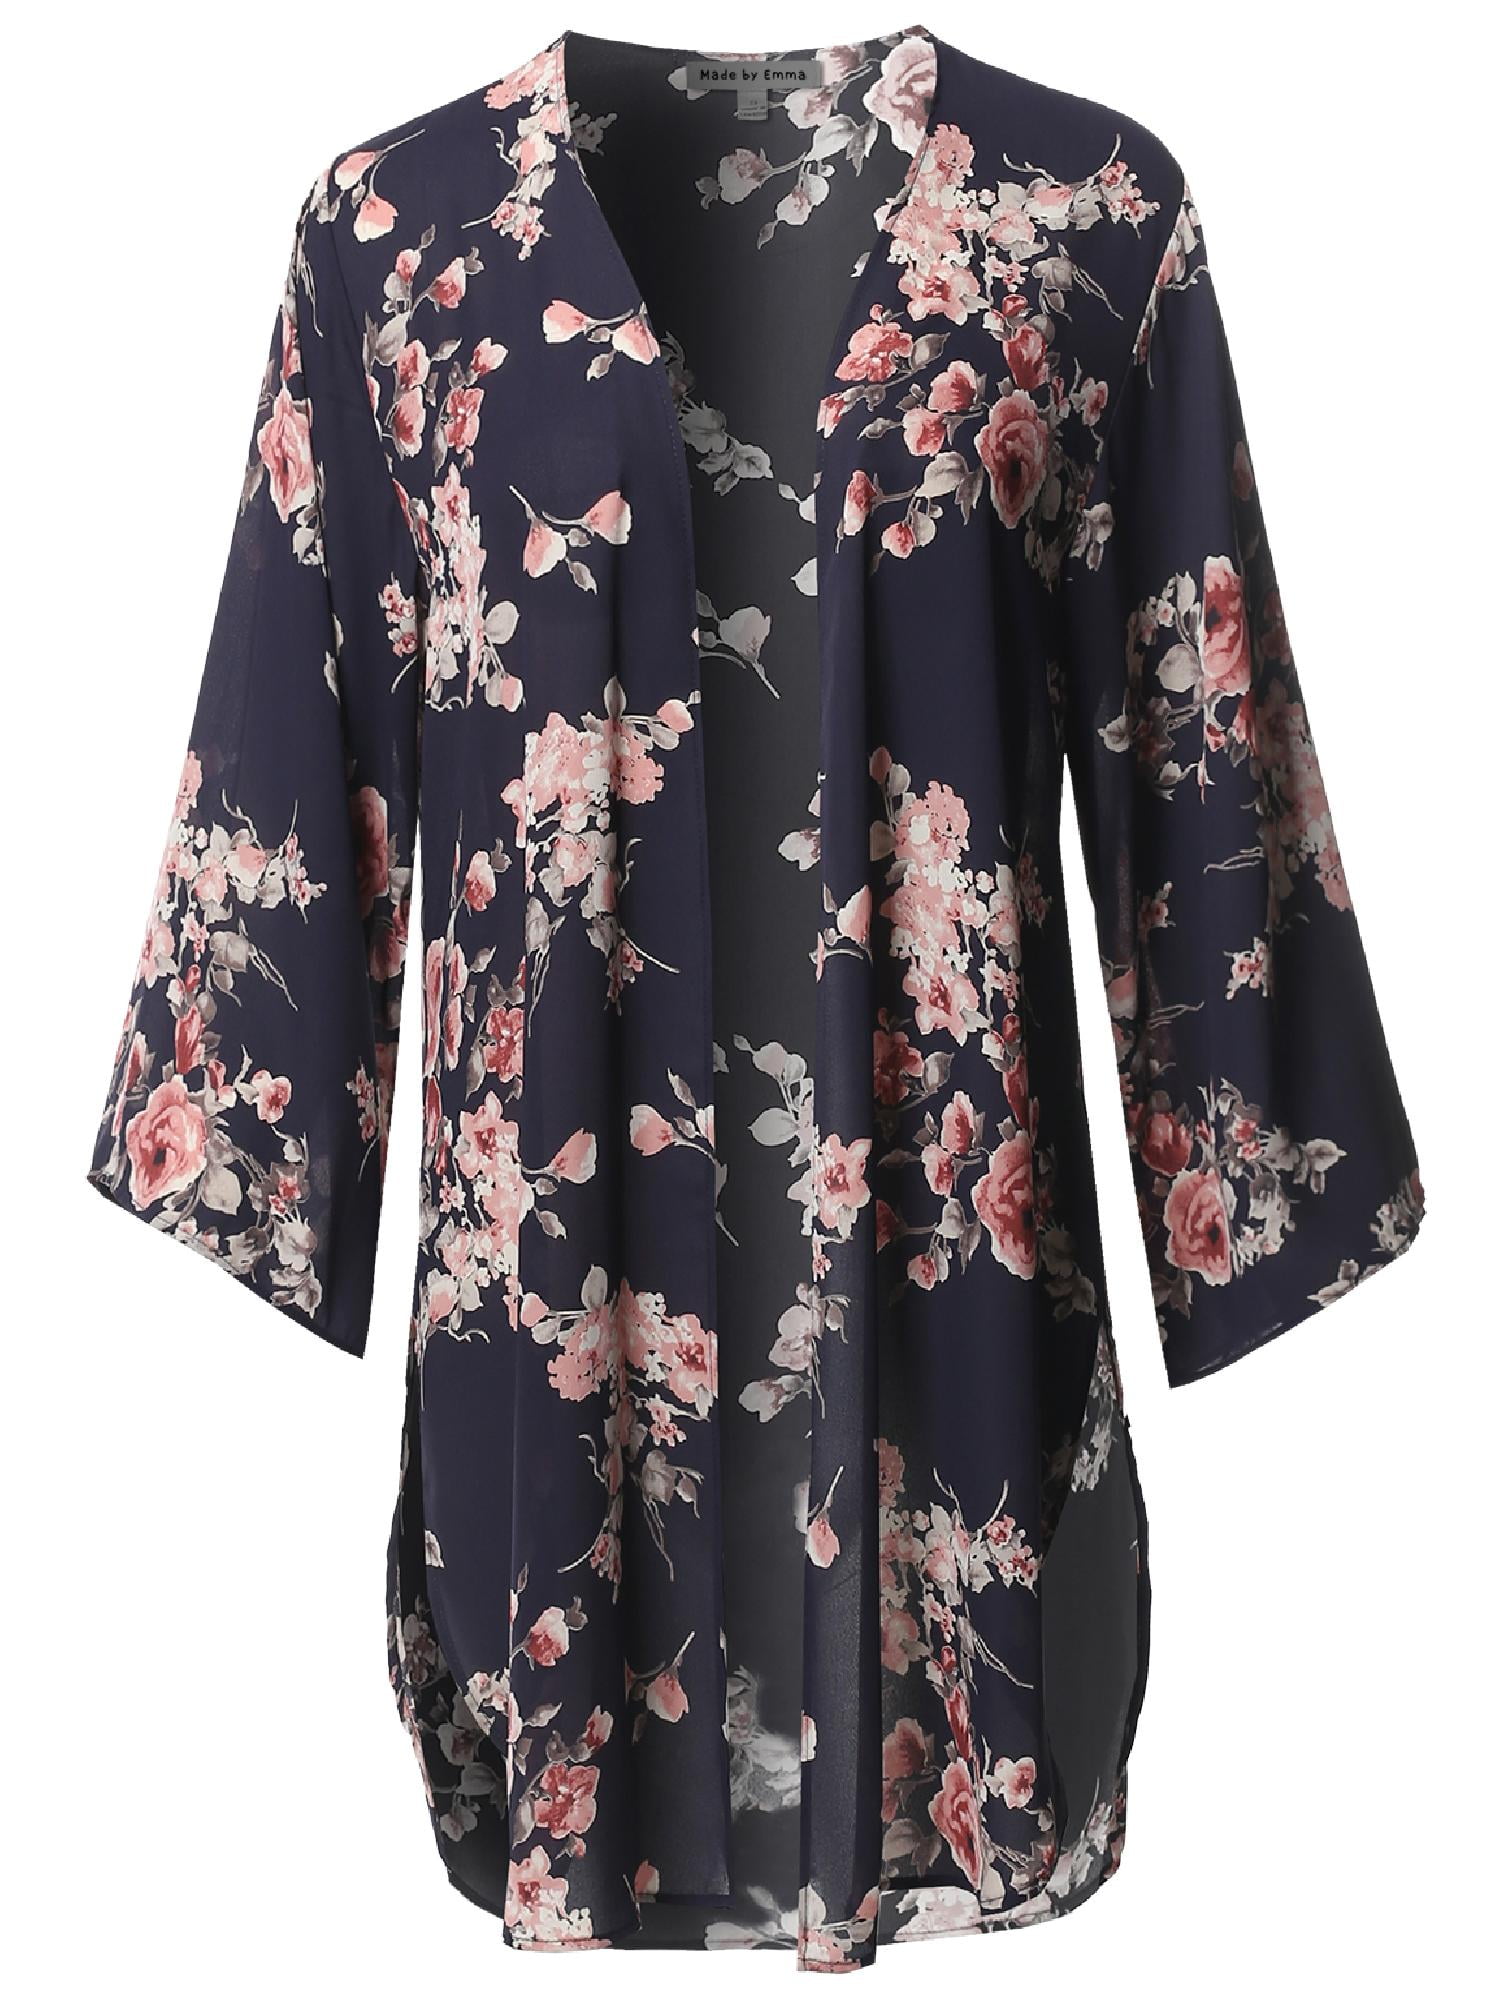 FashionOutfit Women's Floral 3/4 Sleeves Open Style Kimono Cardigan ...